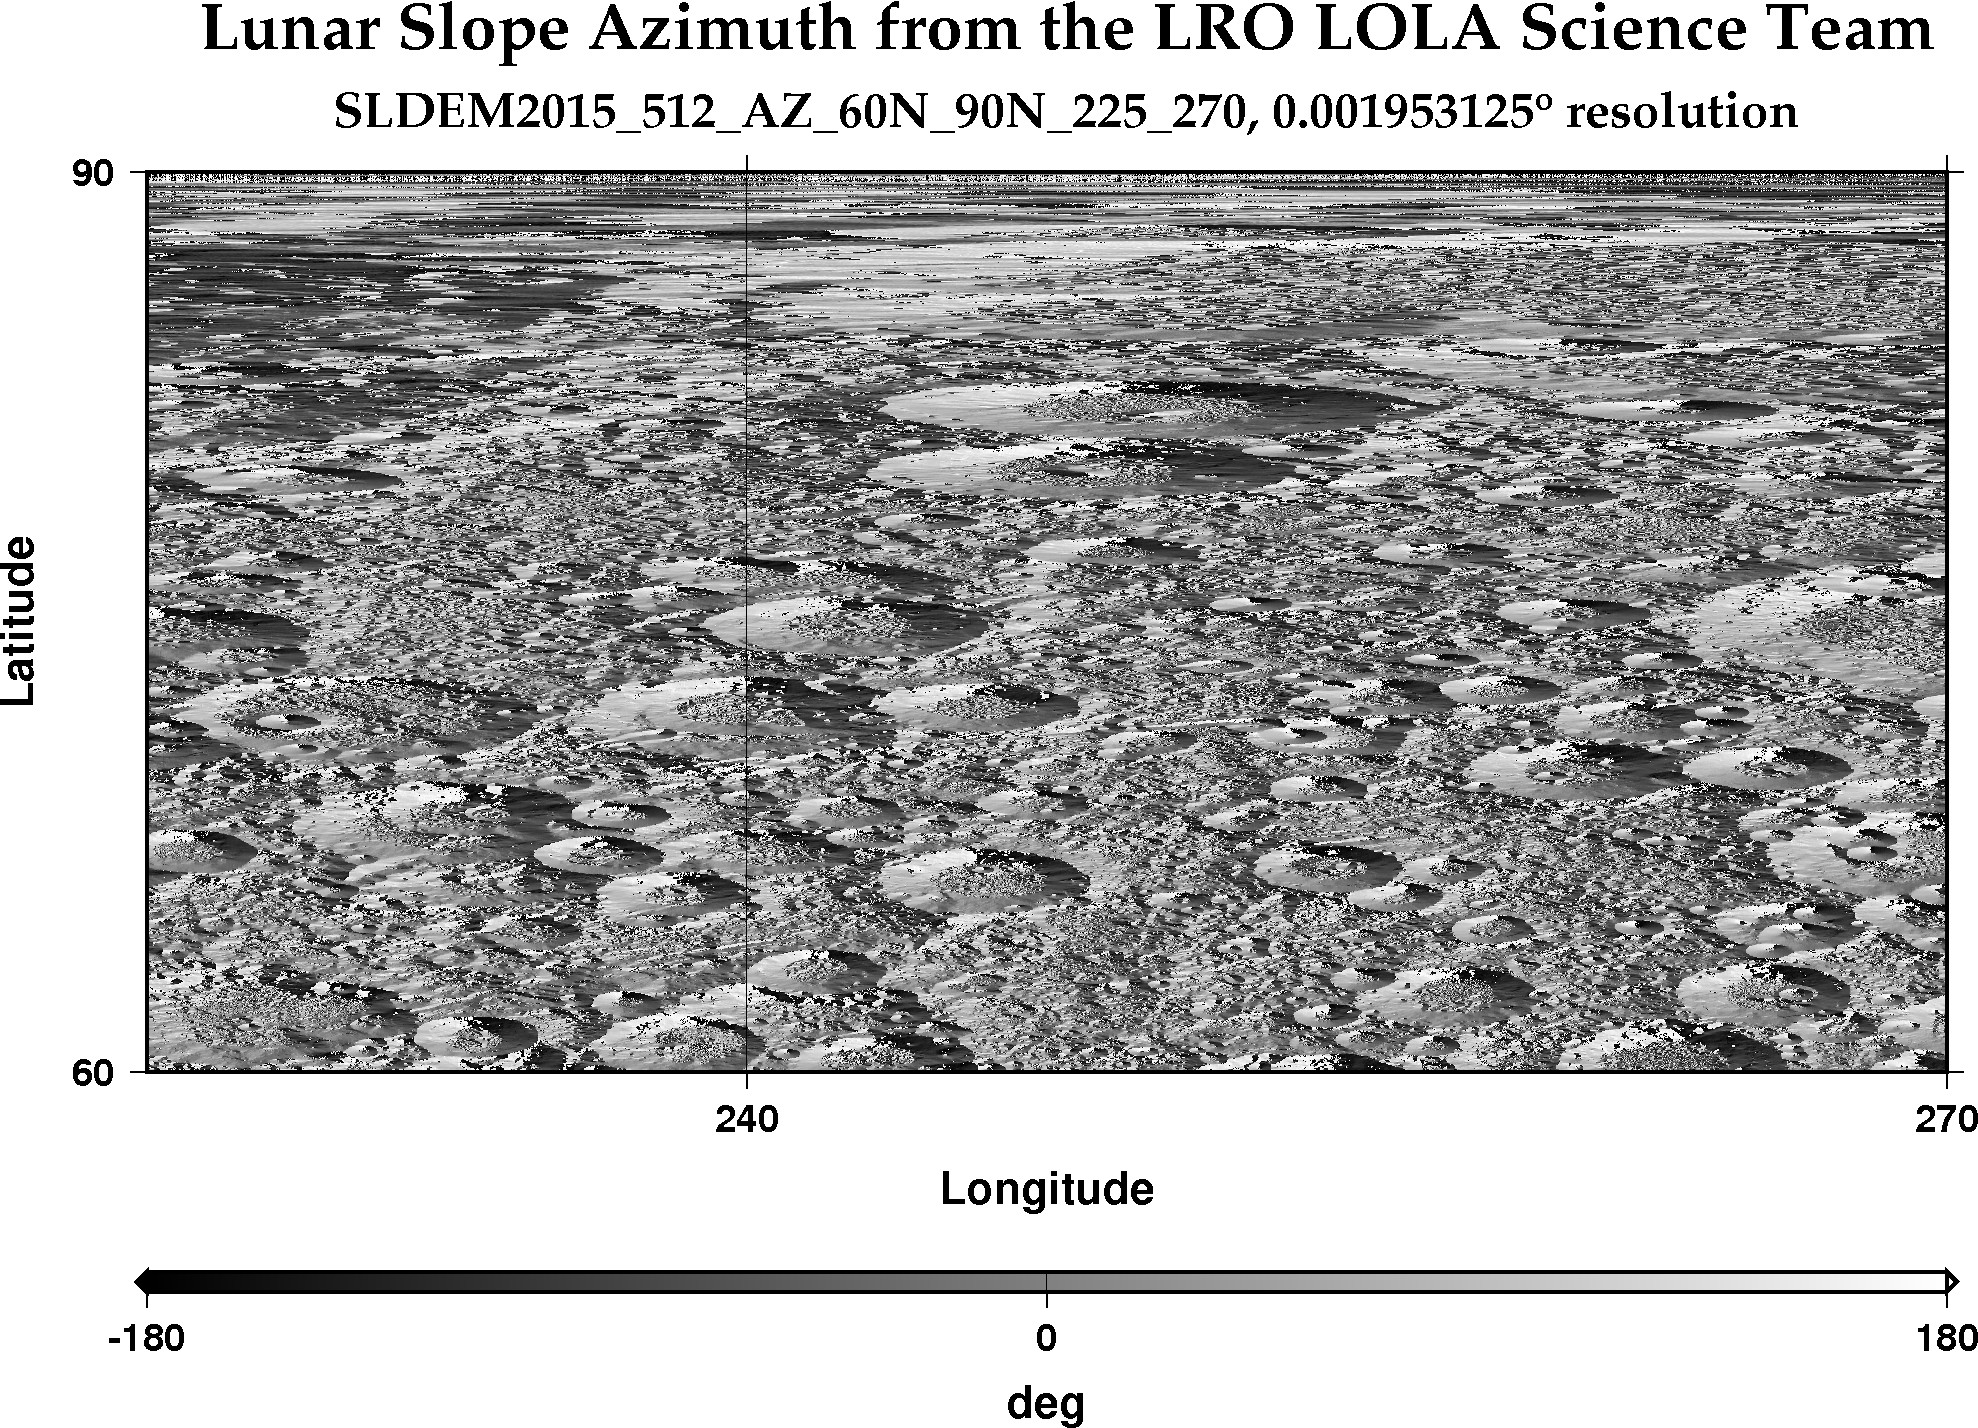 image of lunar topography for SLDEM2015_512_AZ_60N_90N_225_270